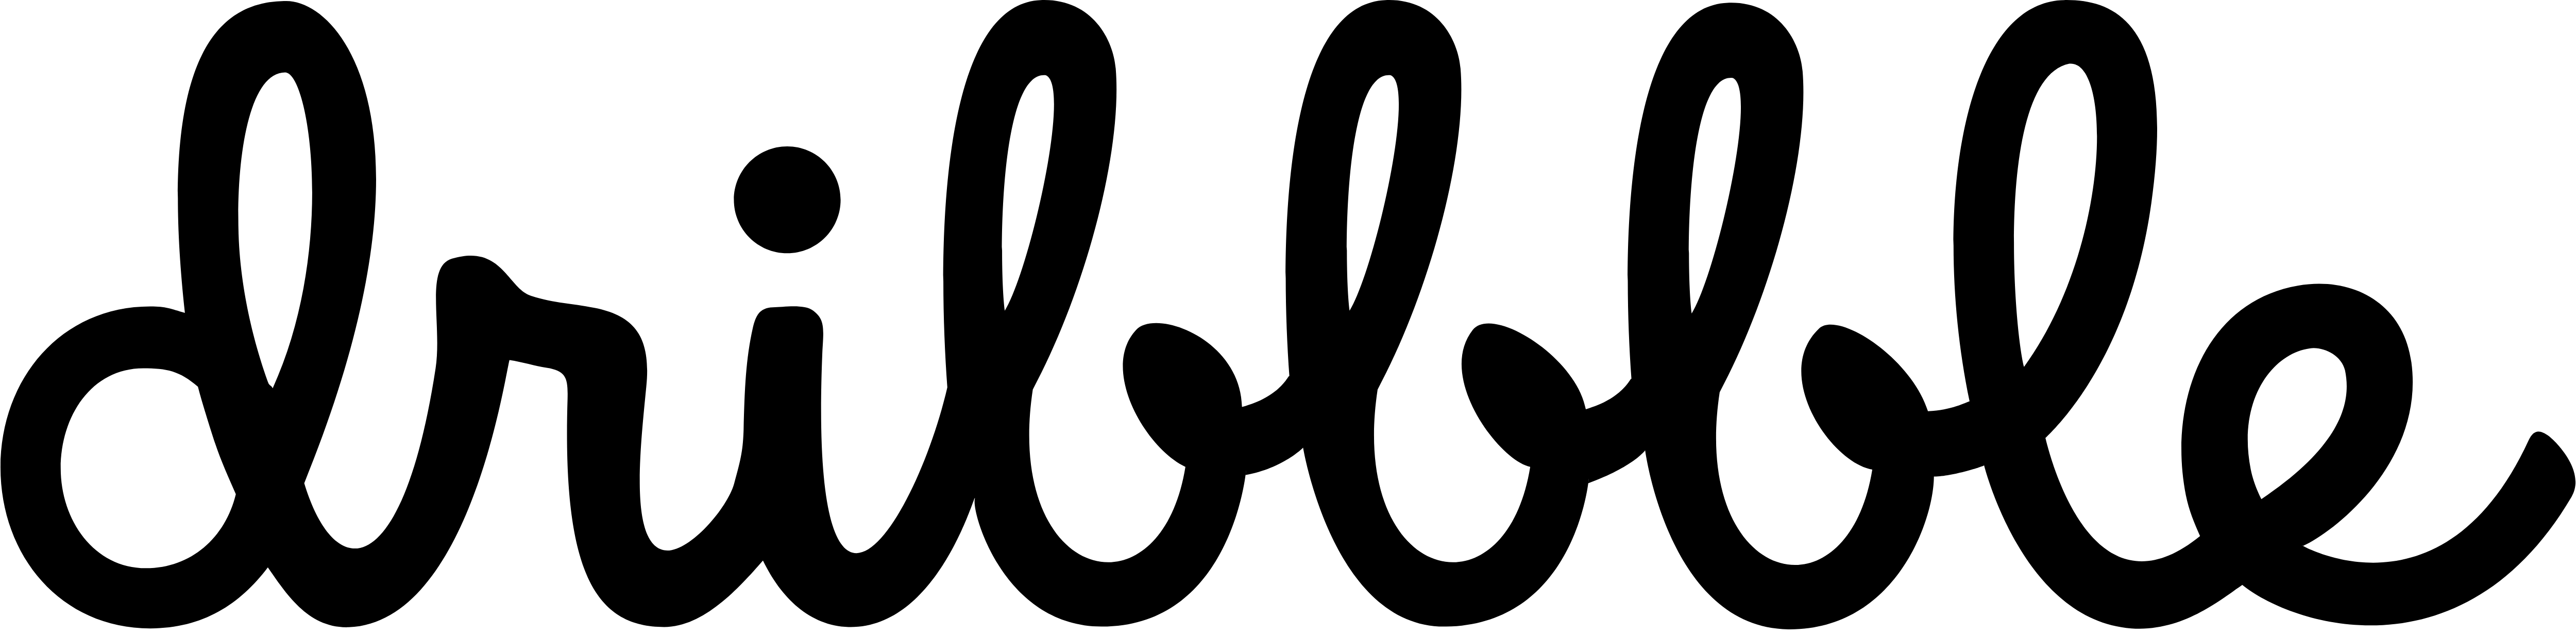 Dribbble Logo Png - Calligrap